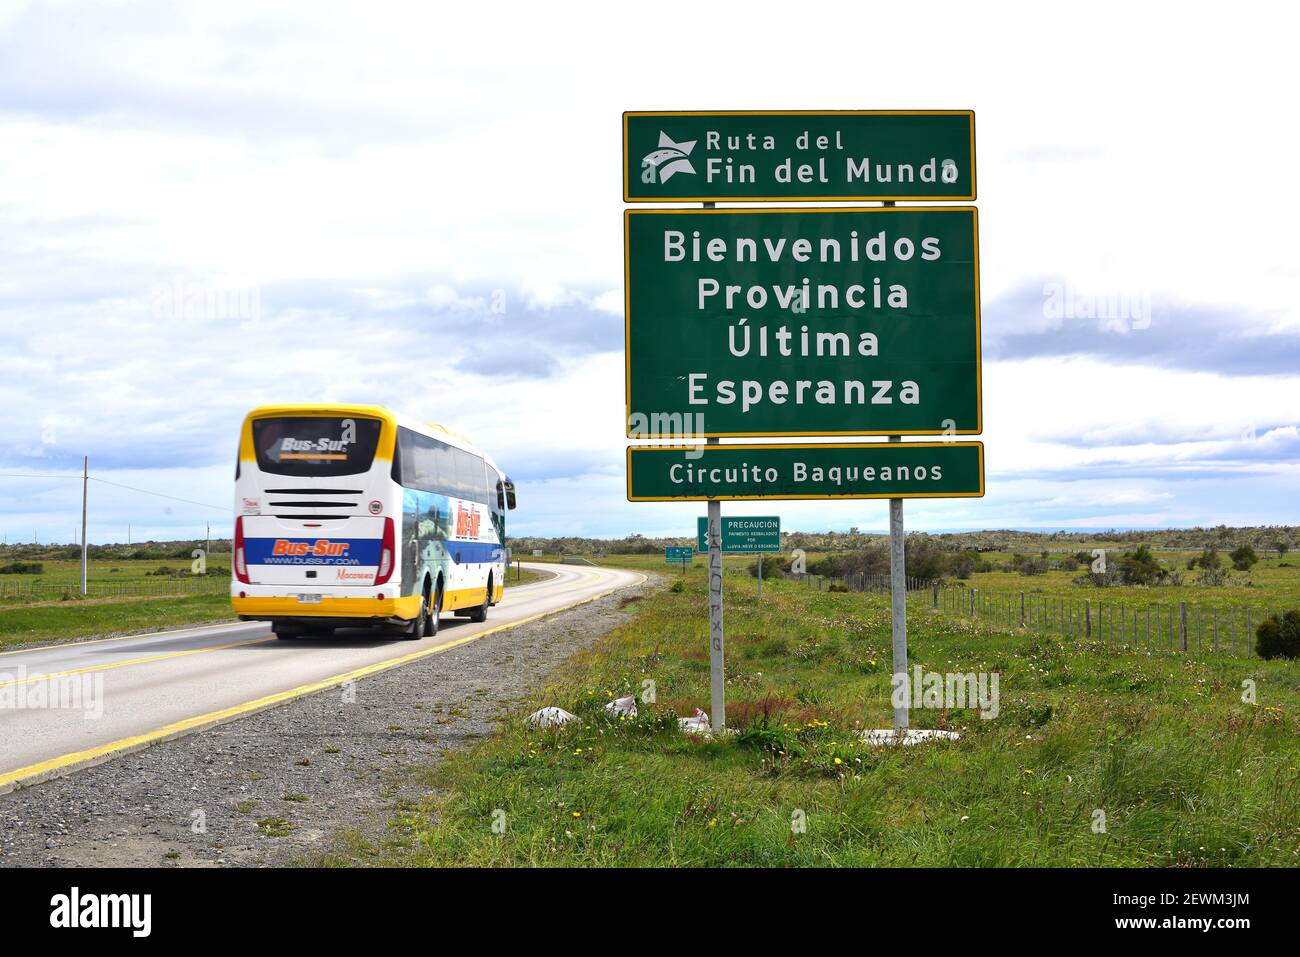 Ruta del Fin del Mundo, Provincia de Ultima Esperanza. Chile. Stock Photo